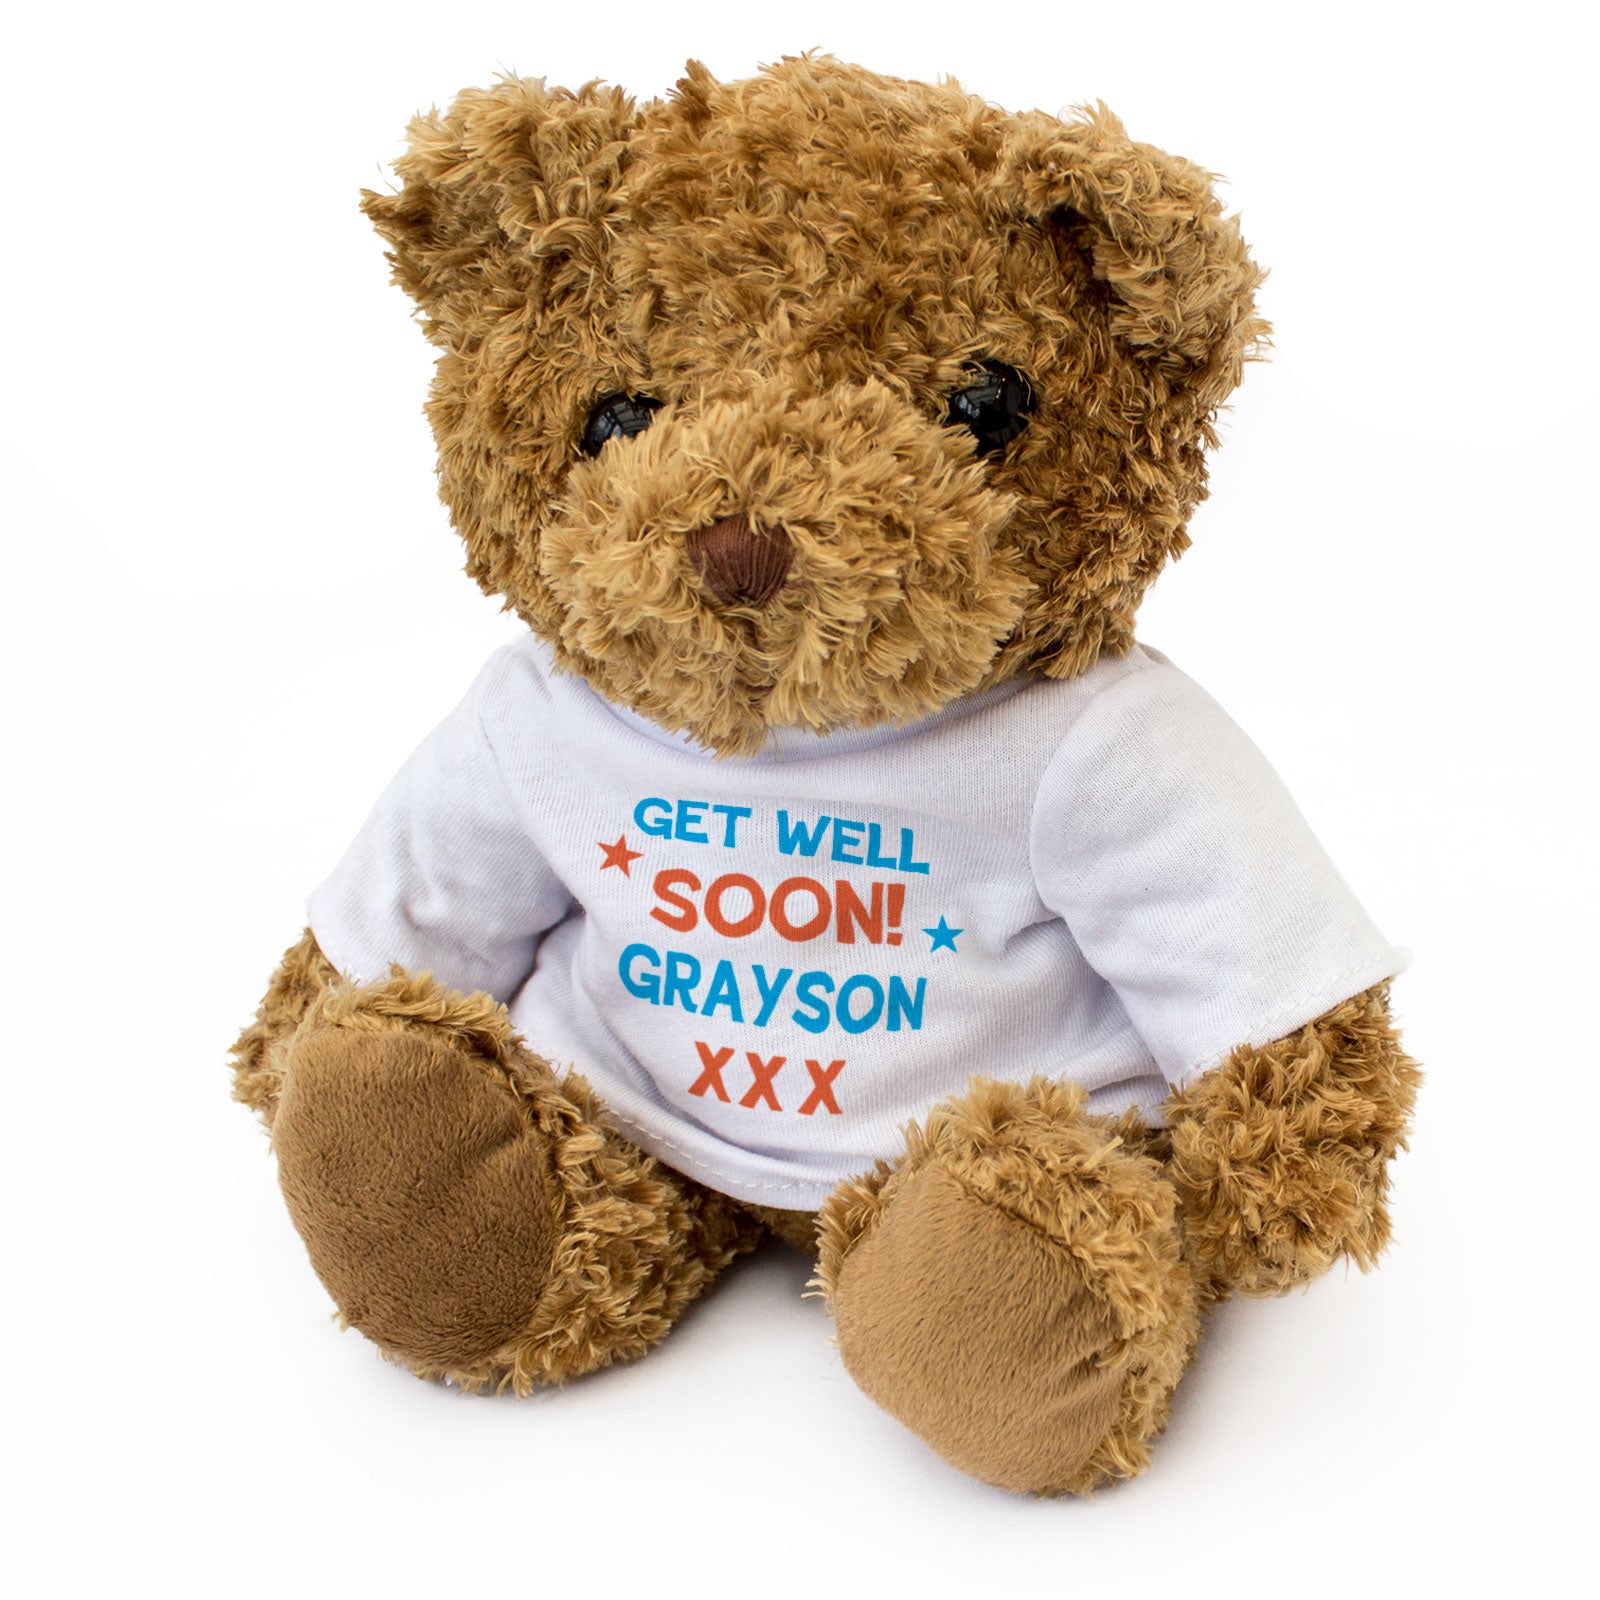 Get Well Soon Grayson - Teddy Bear